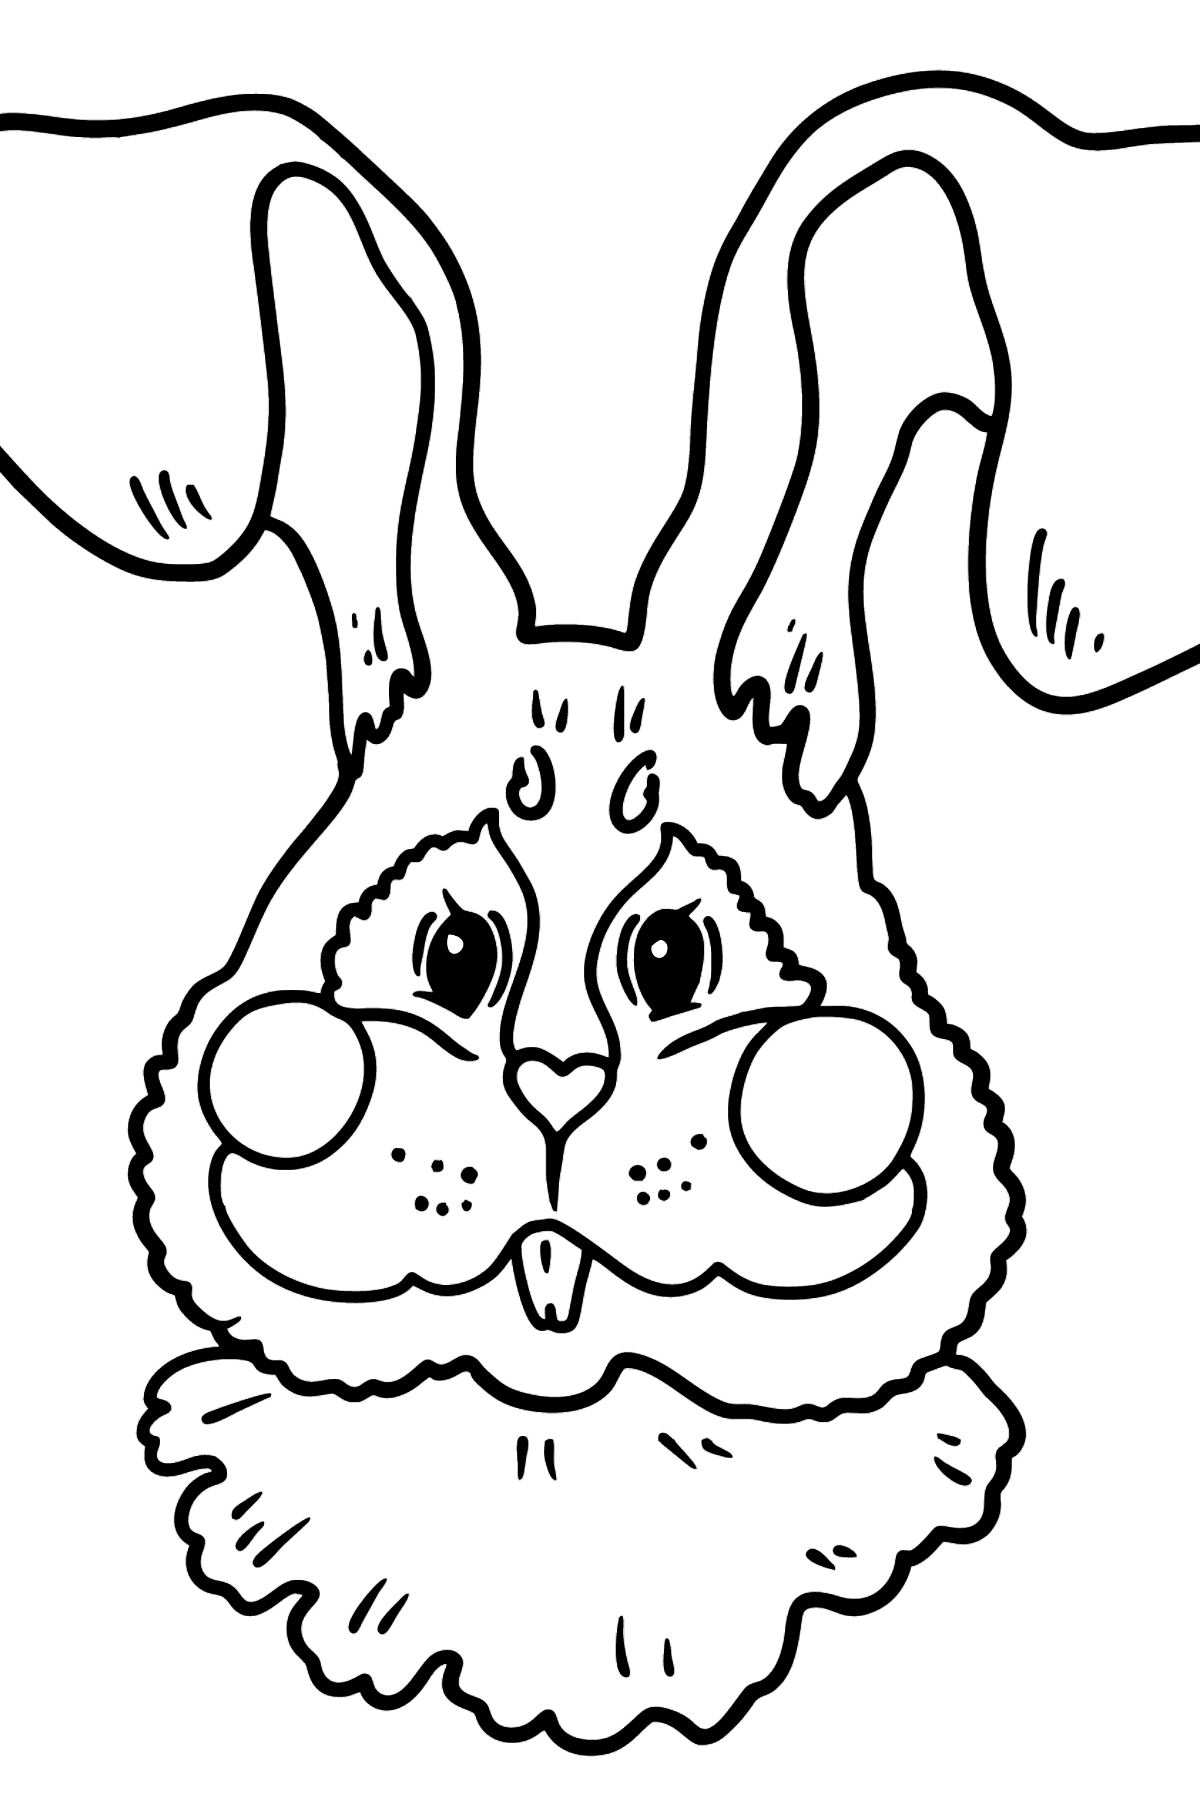 Tegning til farvning kanin næseparti - Tegninger til farvelægning for børn